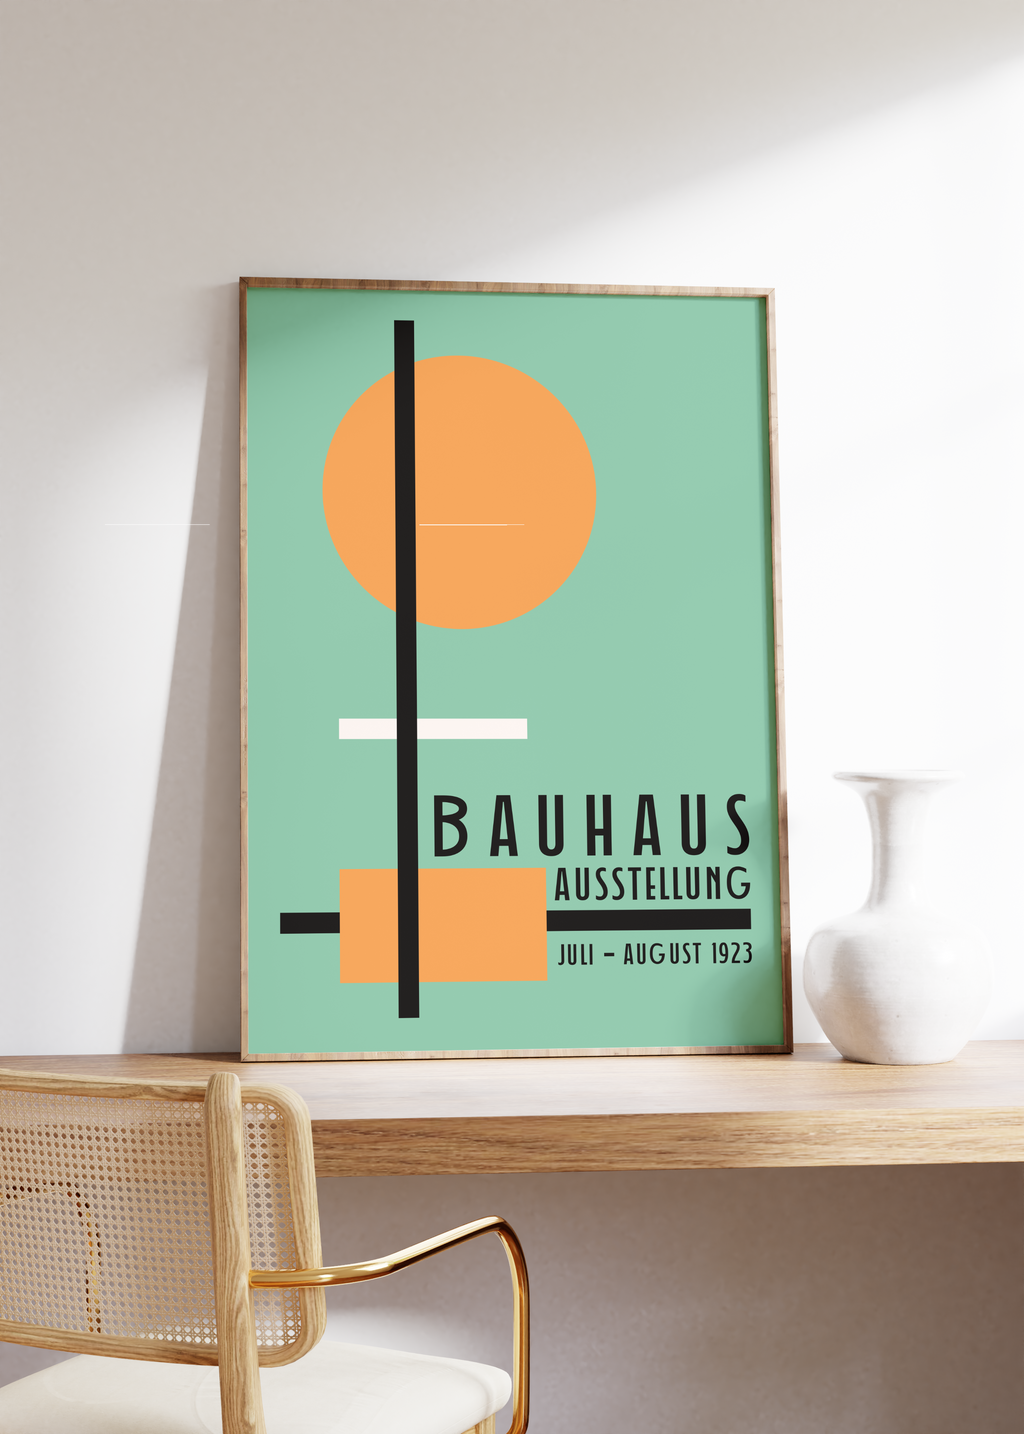 Das Bauhaus Poster zeigt dir unterschiedliche geometrische Formen in Orange, Schwarz und Weiß auf blauem Hintergrund. Das Poster ist einem Ausstellungsplakat von 1923 nachempfunden, ist so aber nie erschienen. 